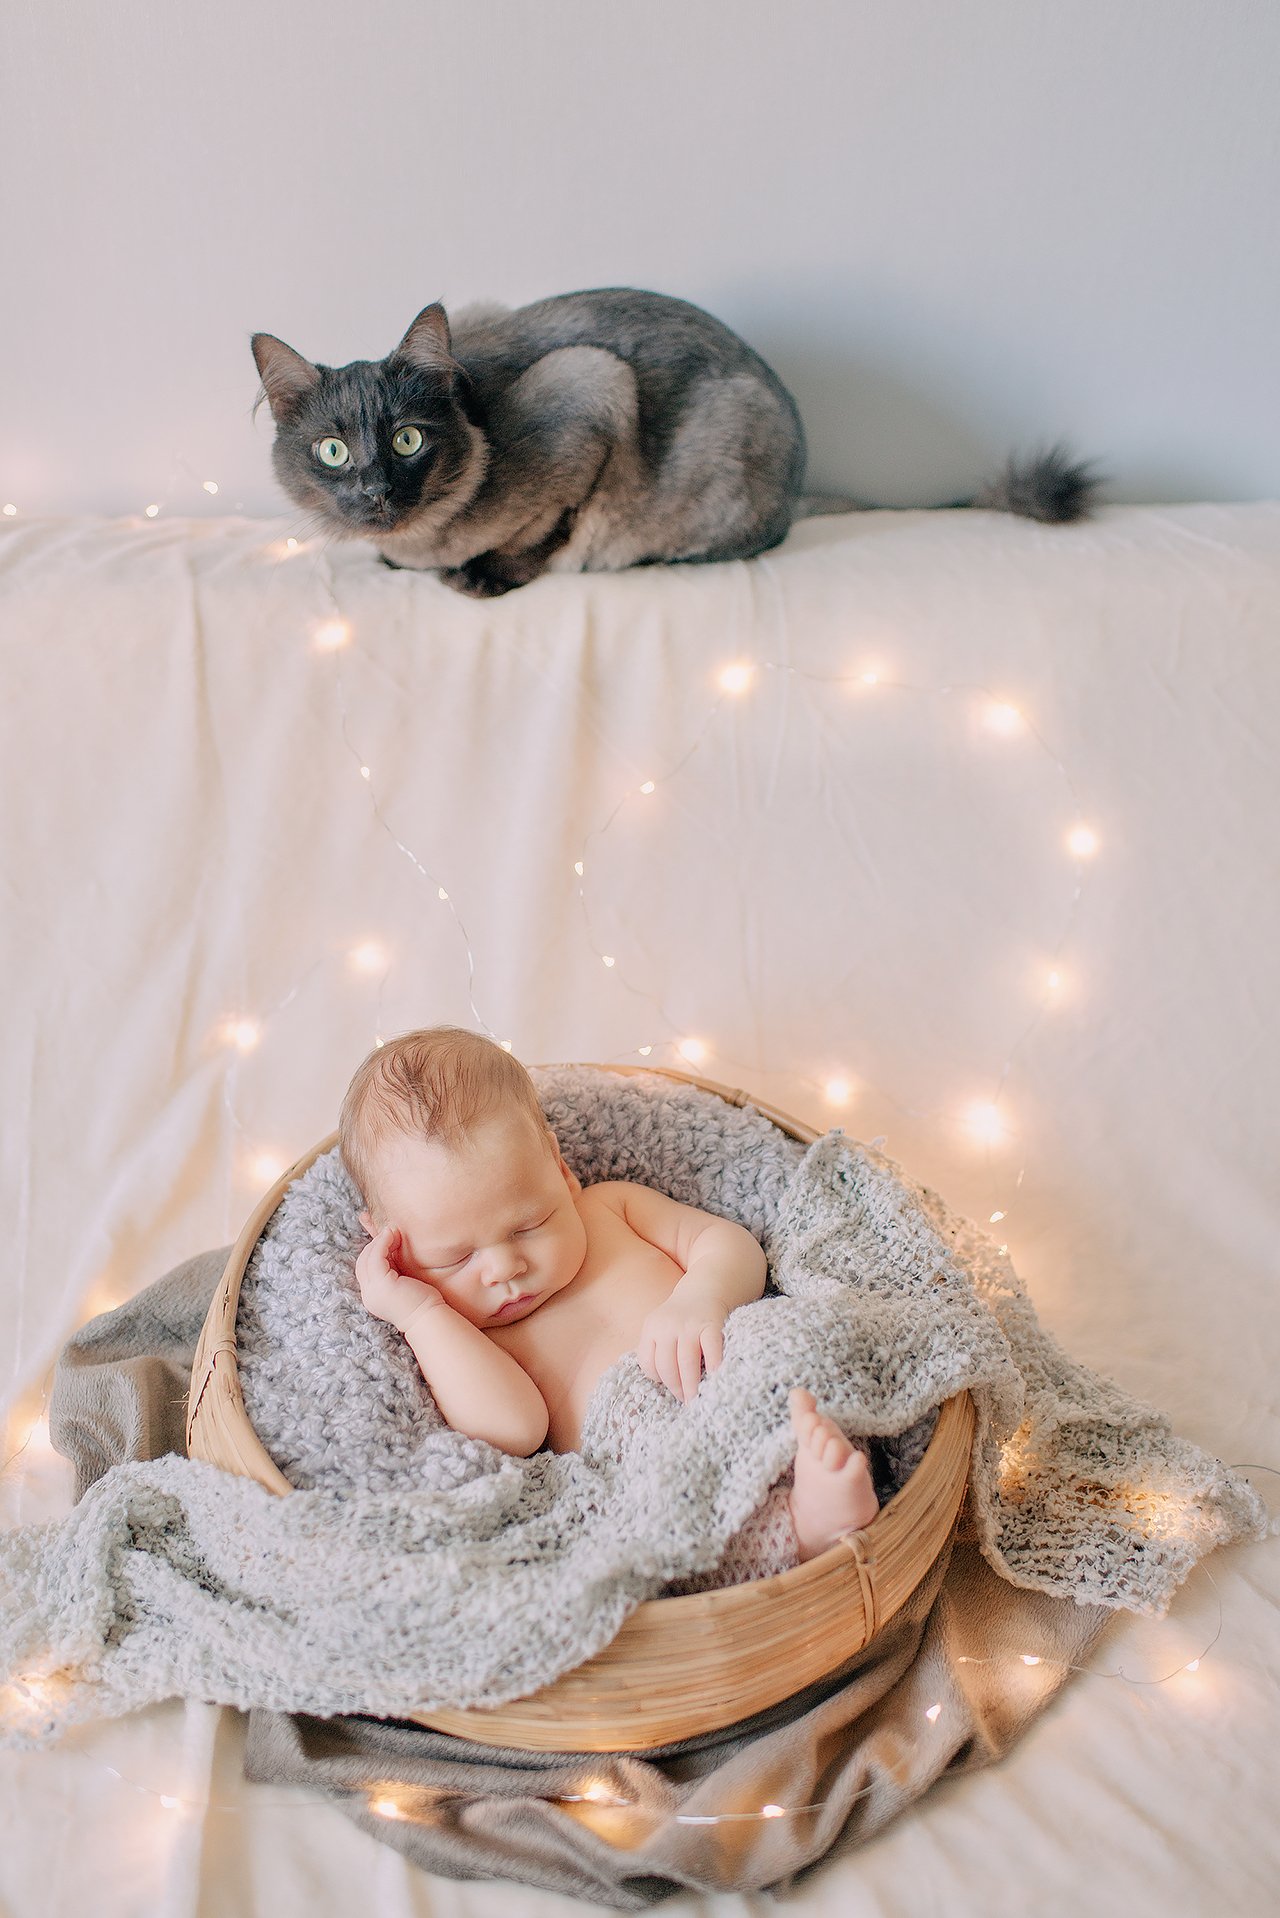 новорожденный ребенок мальчик малыш дети животное кот свет дом тепло уют глаза , Власко Алена